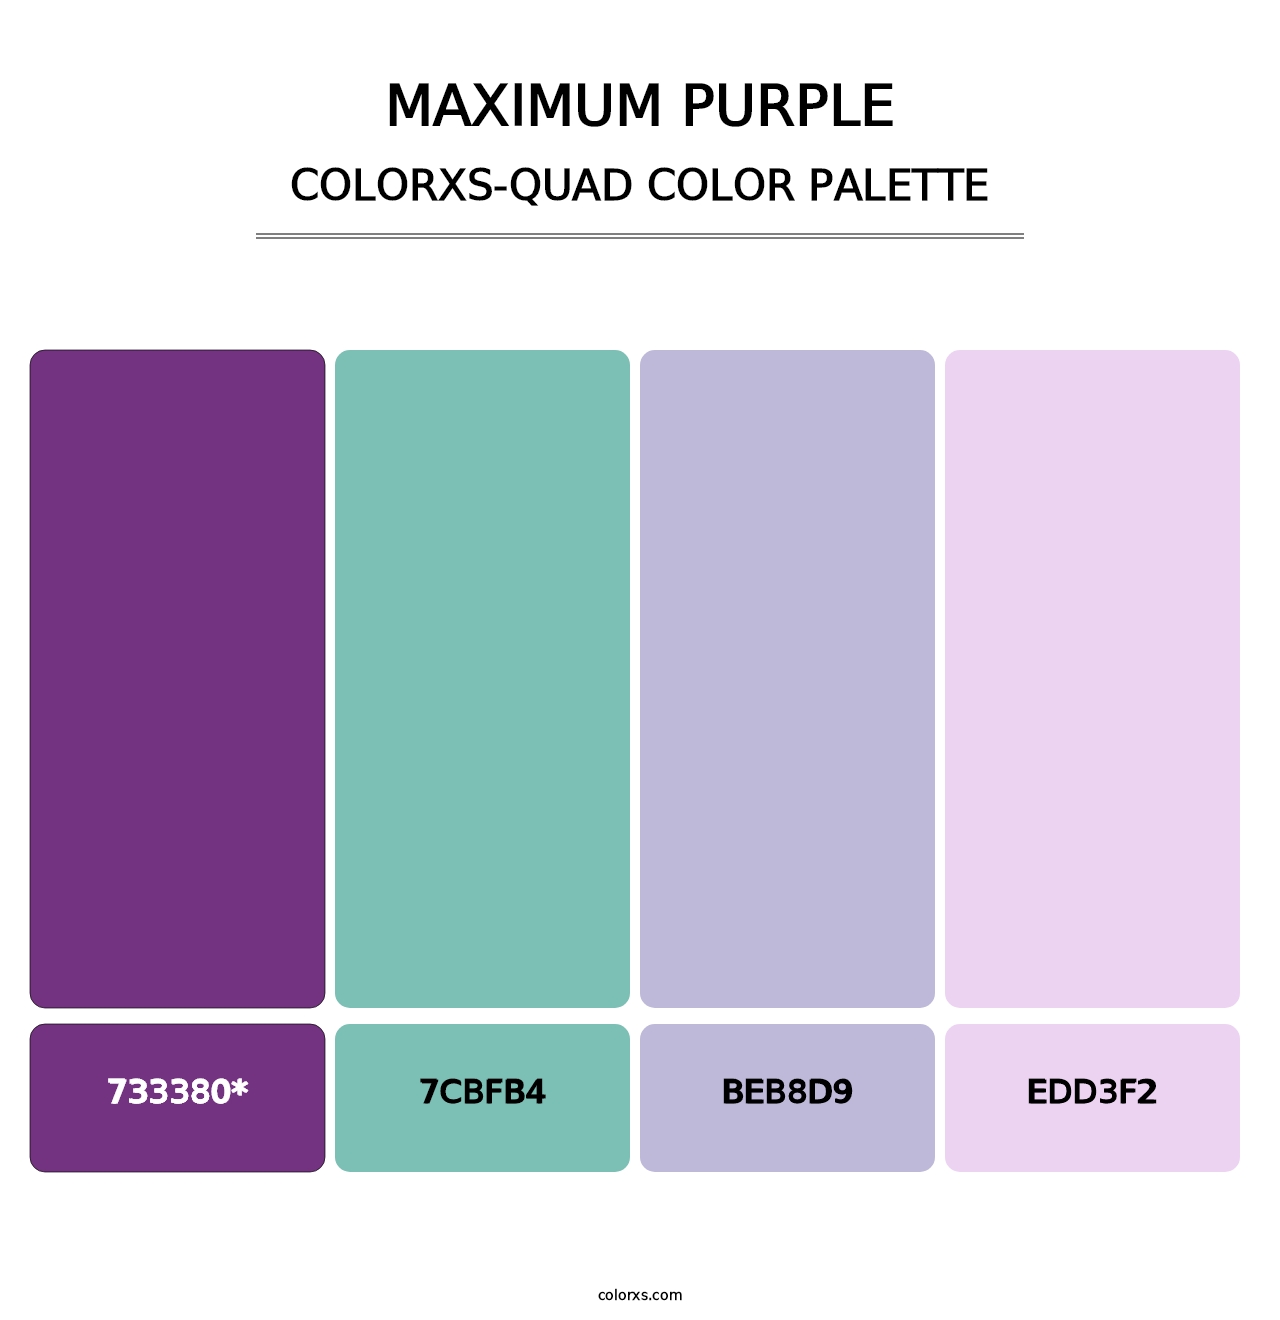 Maximum Purple - Colorxs Quad Palette